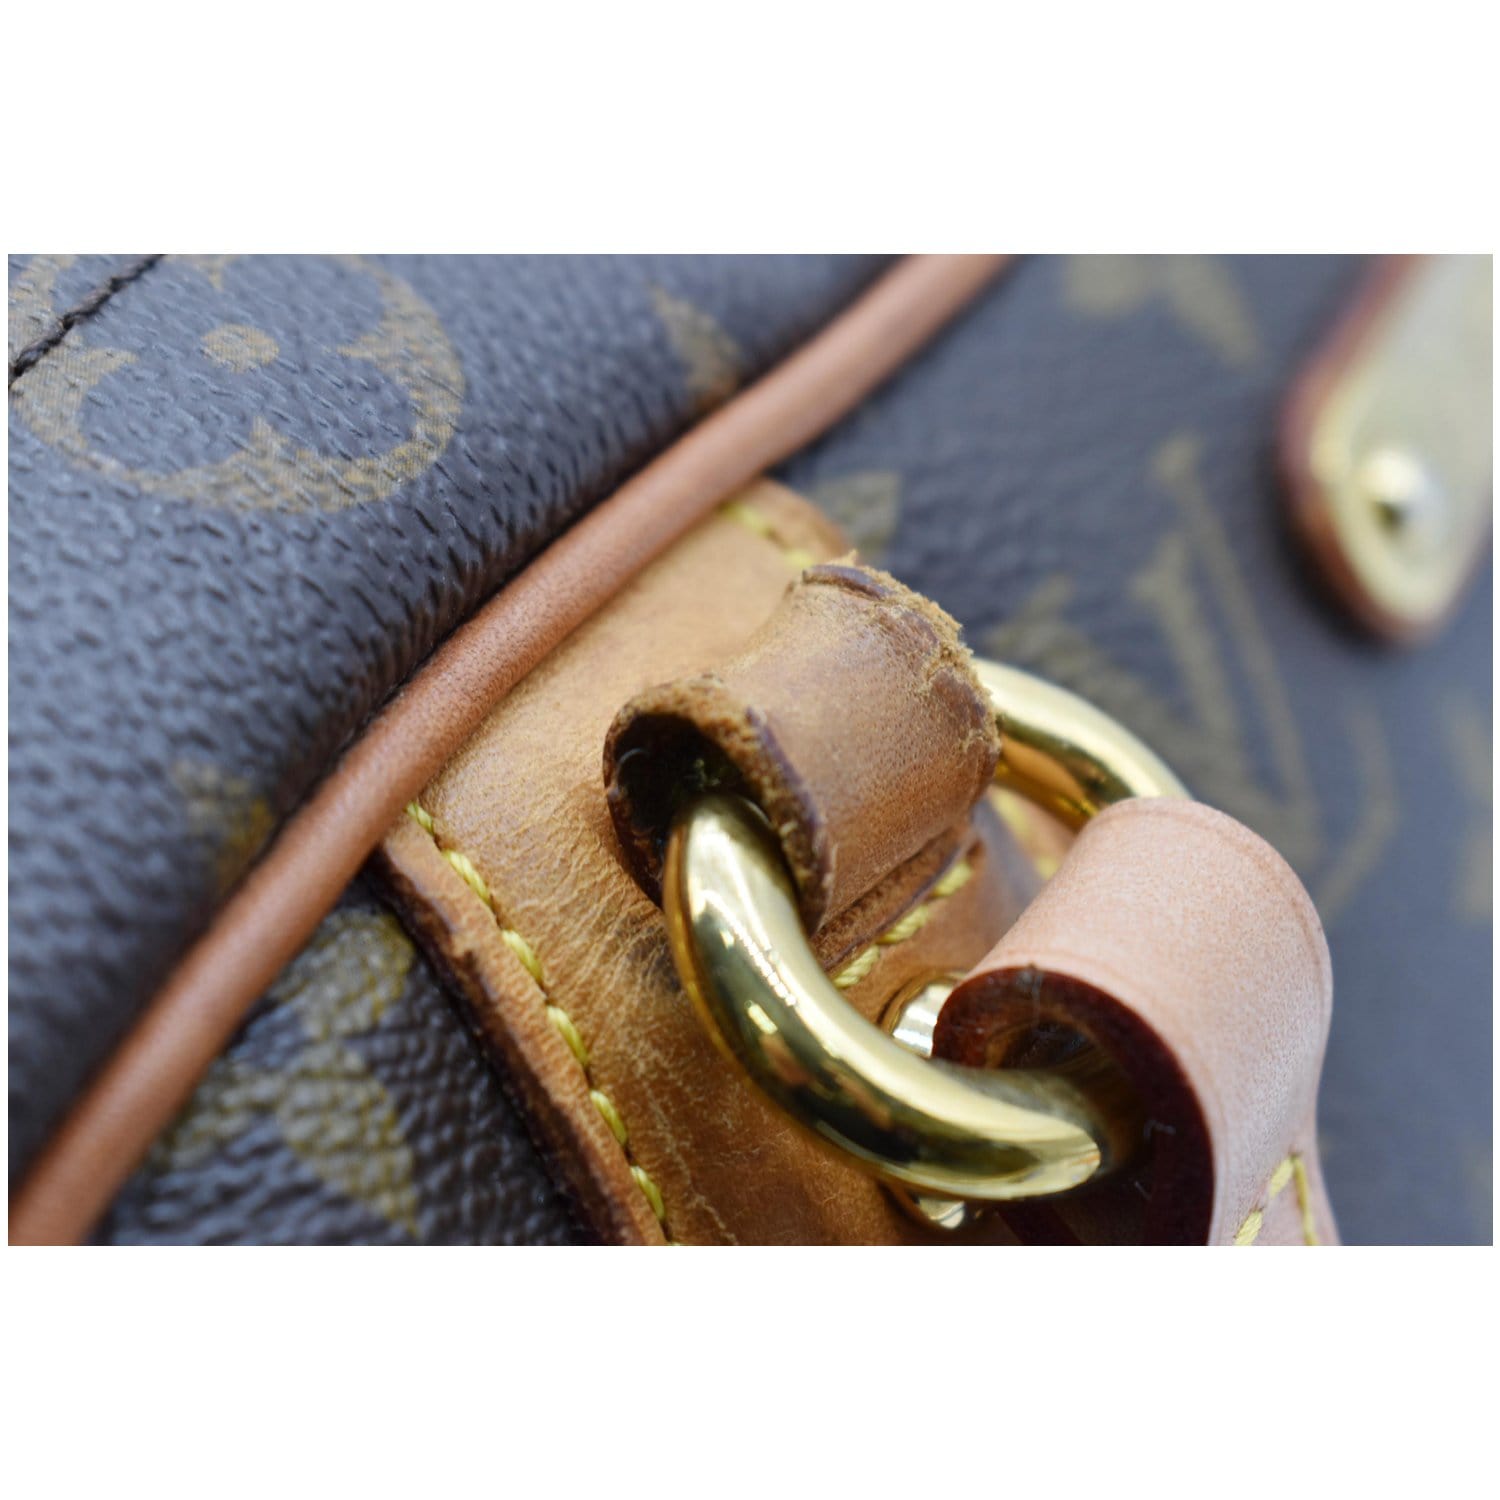 Montorgueil cloth handbag Louis Vuitton Brown in Cloth - 28836371